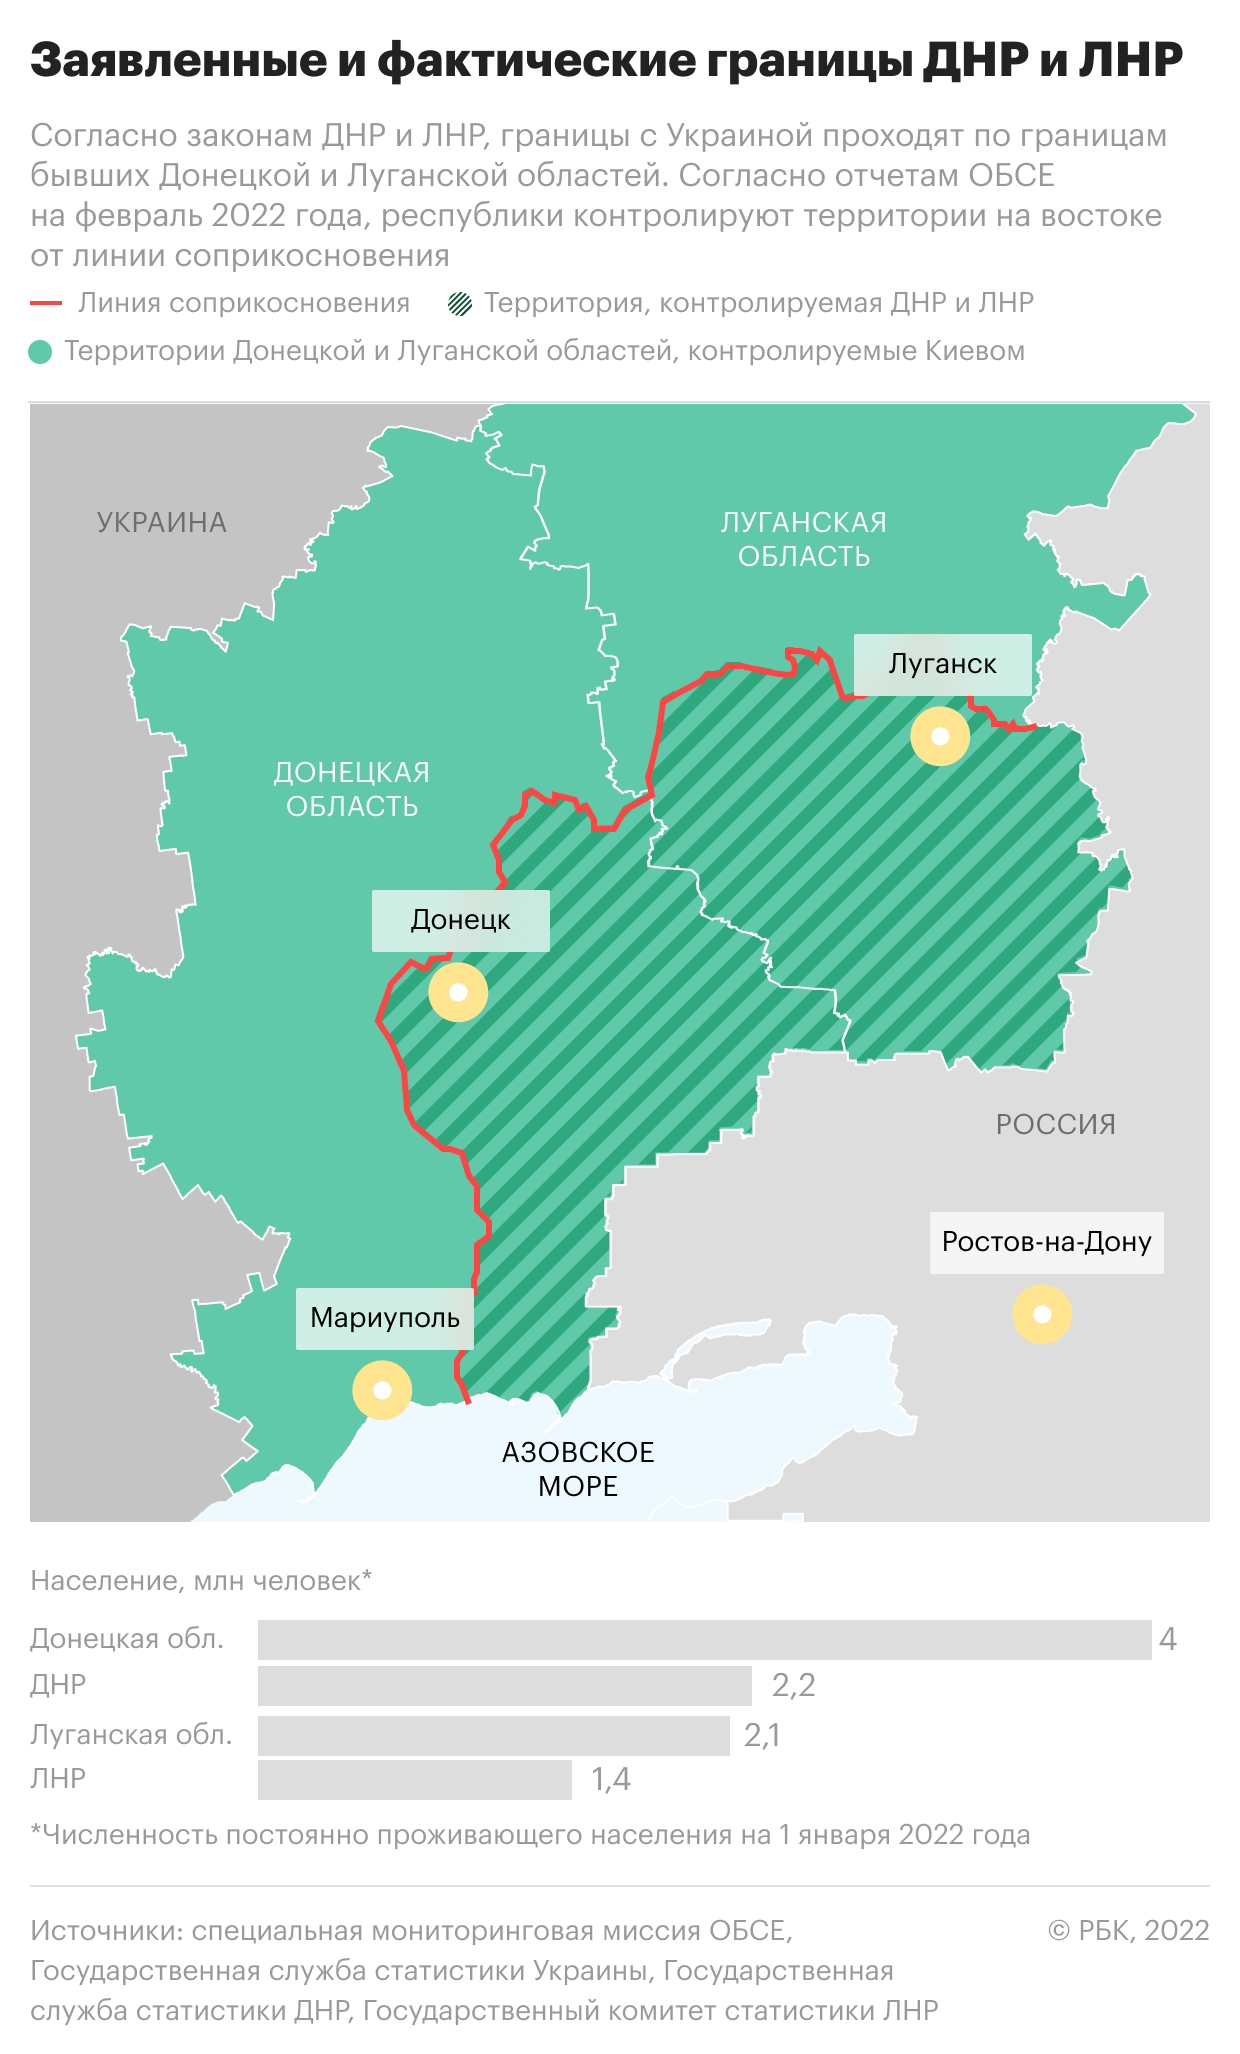 Как отличаются заявленные и фактические границы ДНР и ЛНР. Карта